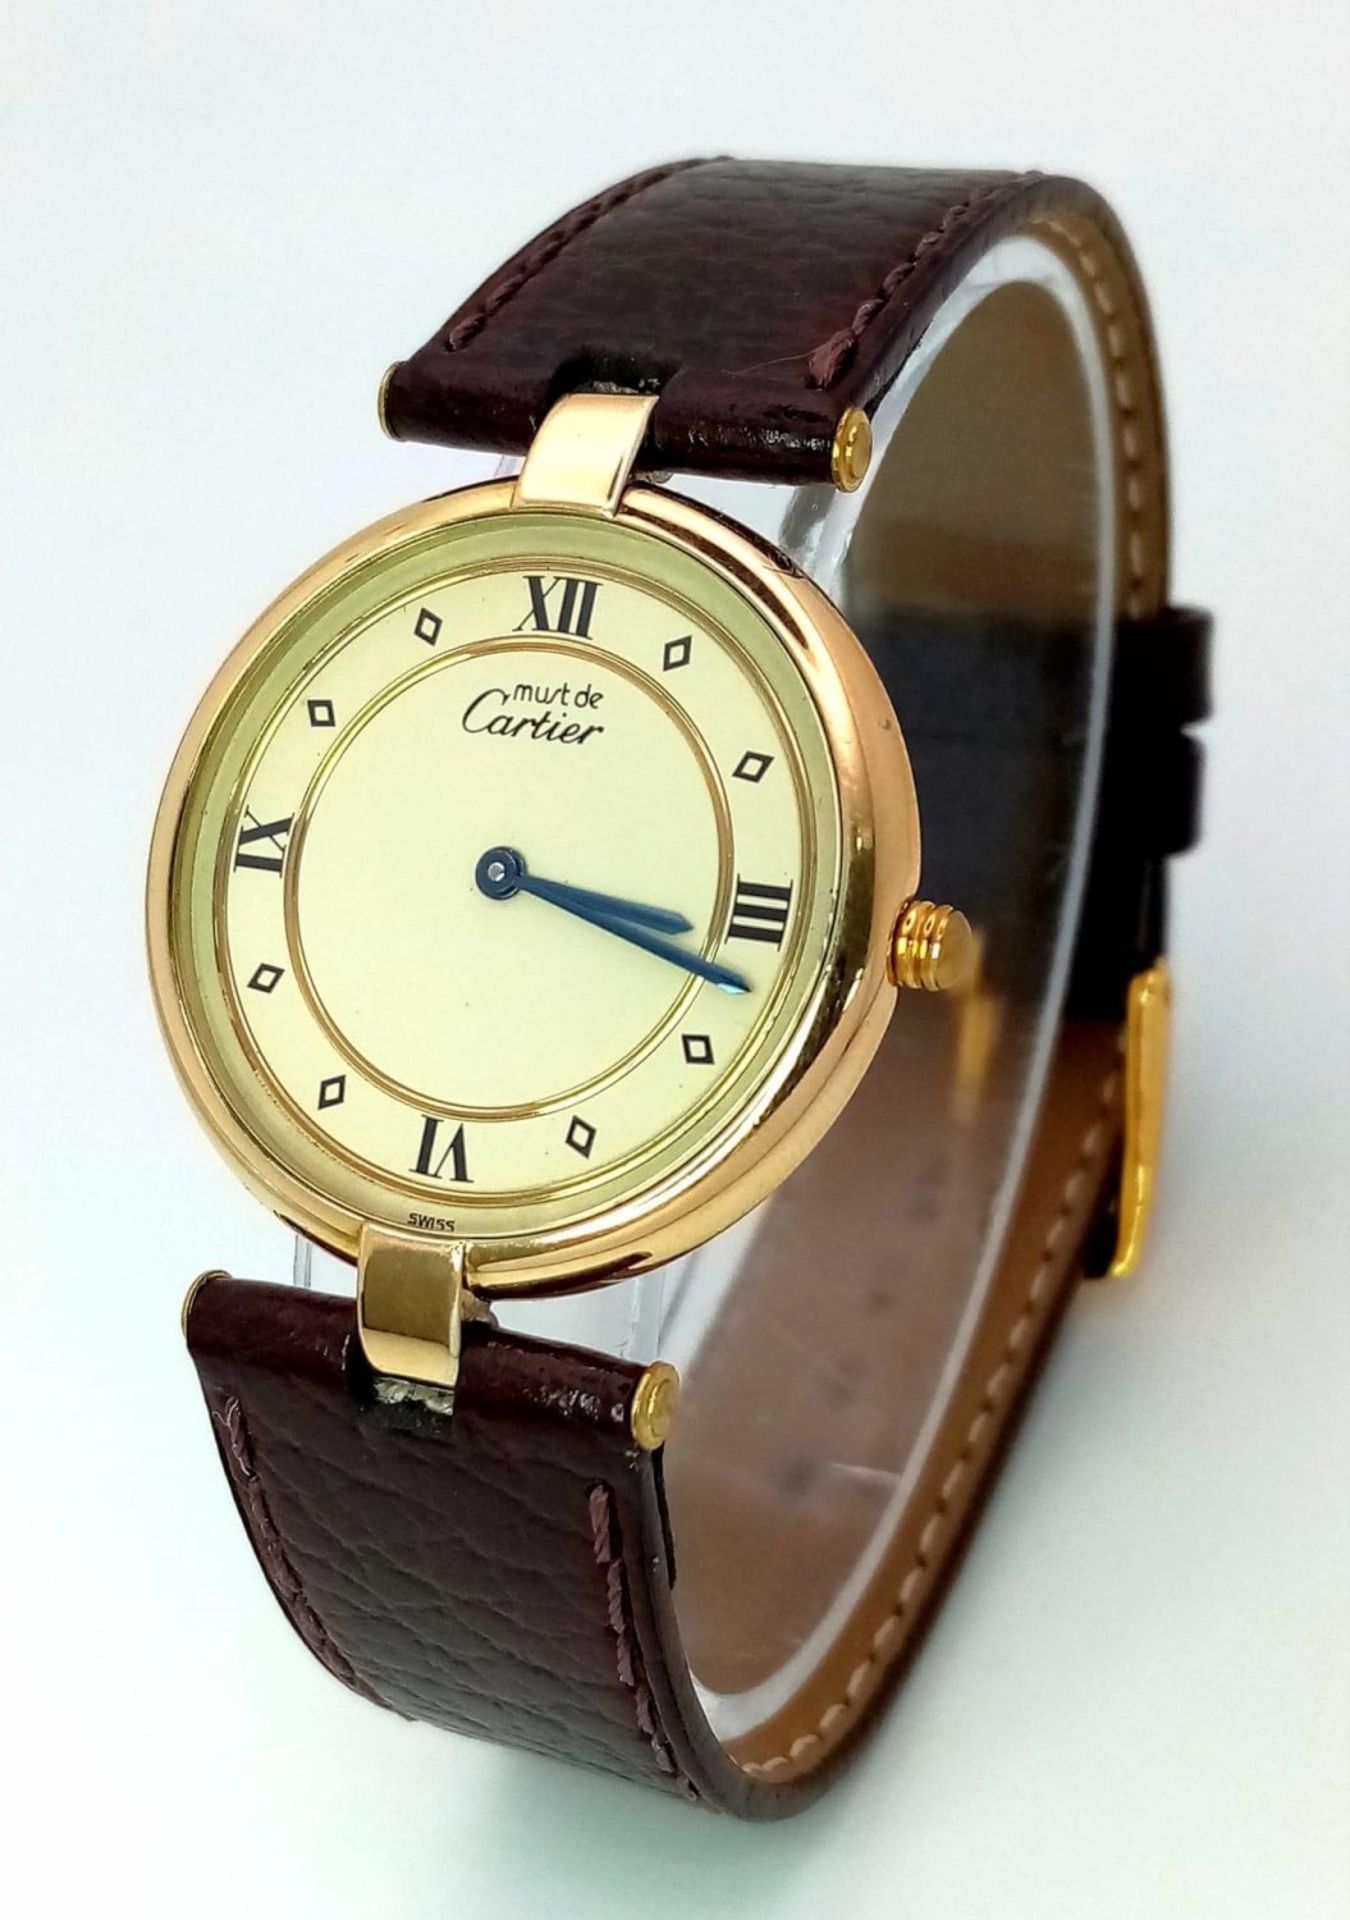 A Must de Cartier Quartz Gents Vermeil 925 Silver Watch. Brown leather strap. Vermeil case - 30mm.